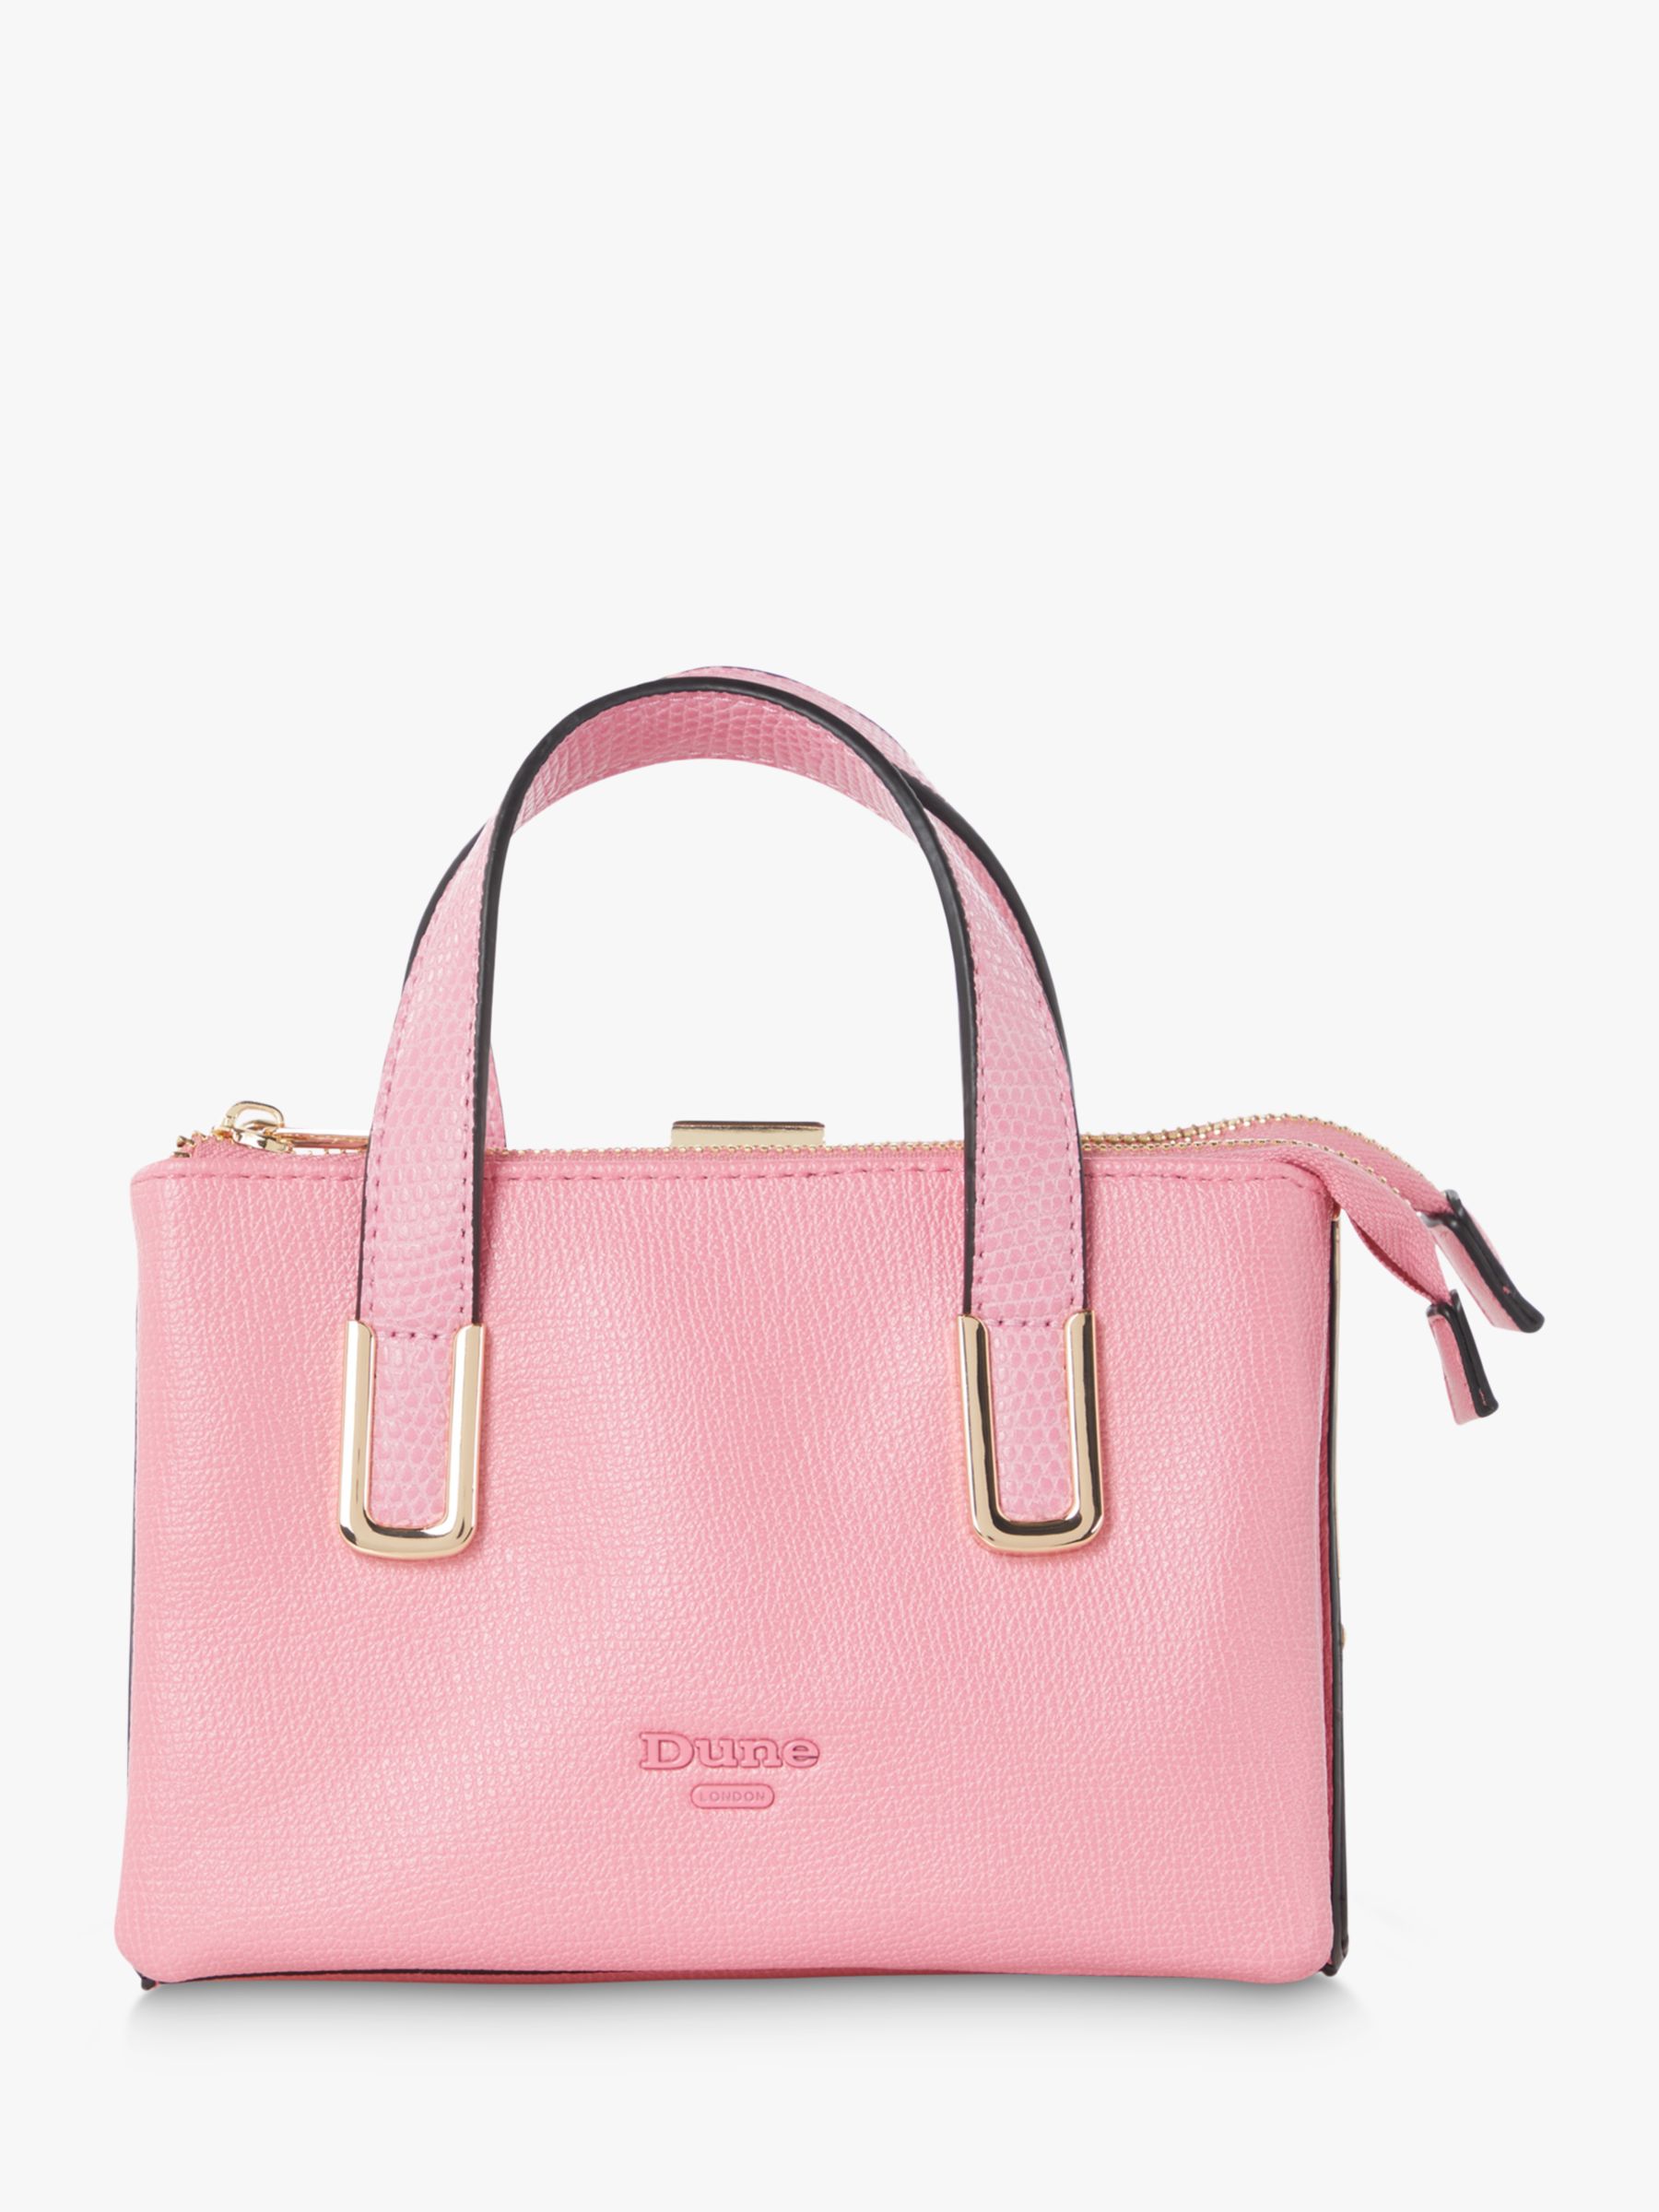 Dune Donna Mini Grab Bag, Pink at John Lewis & Partners